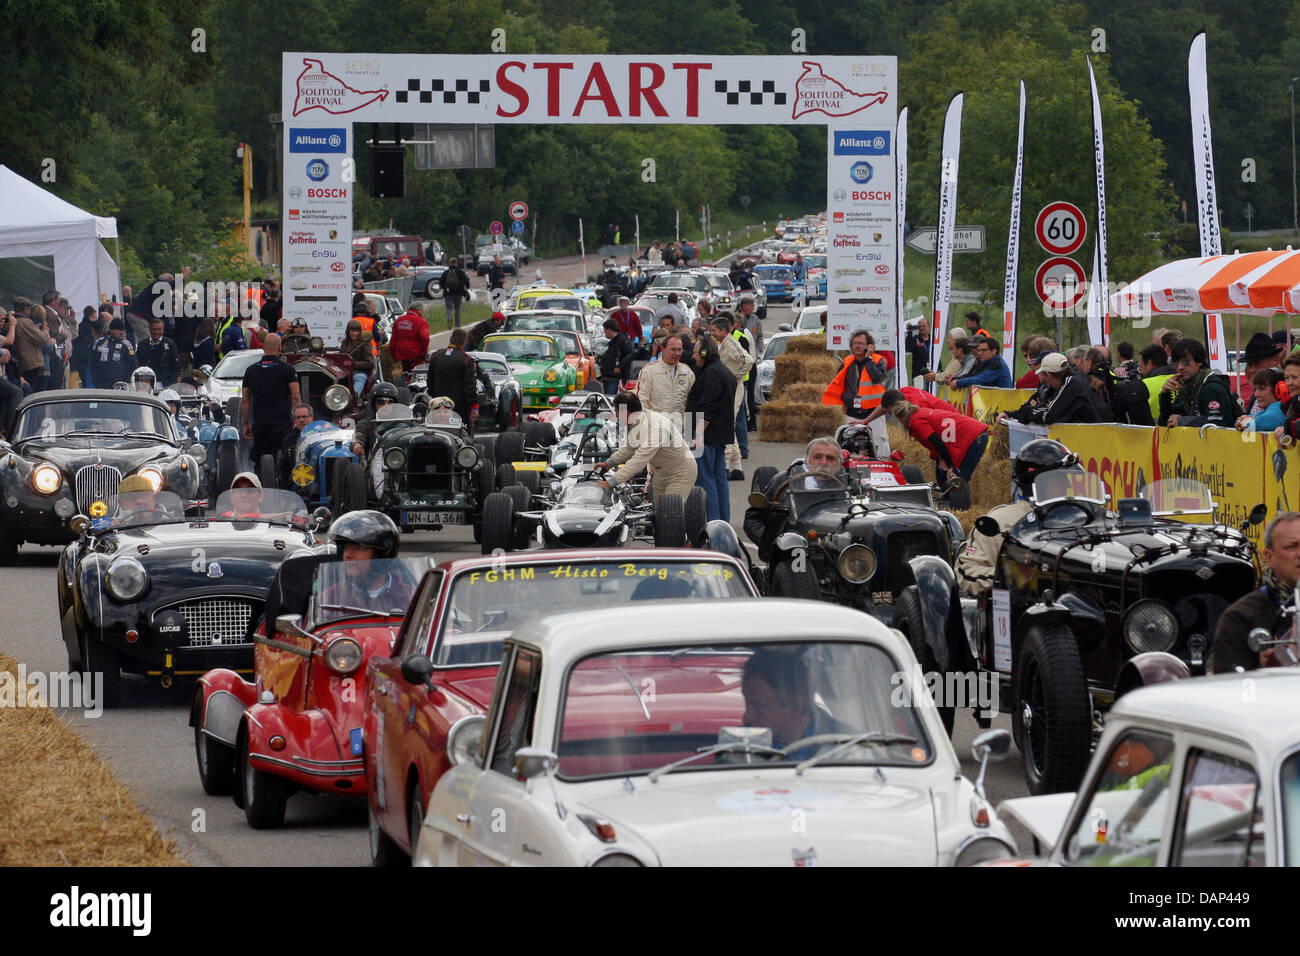 Historischen Rennsport Autos fahren auf der ehemaligen Rennstrecke Solitudering in der Nähe von Stuttgart, Deutschland, 23. Juli 2011. Die Rennstrecke ist seit 1965 nicht bestritten. Foto: THOMAS NIEDERMUELLER Stockfoto